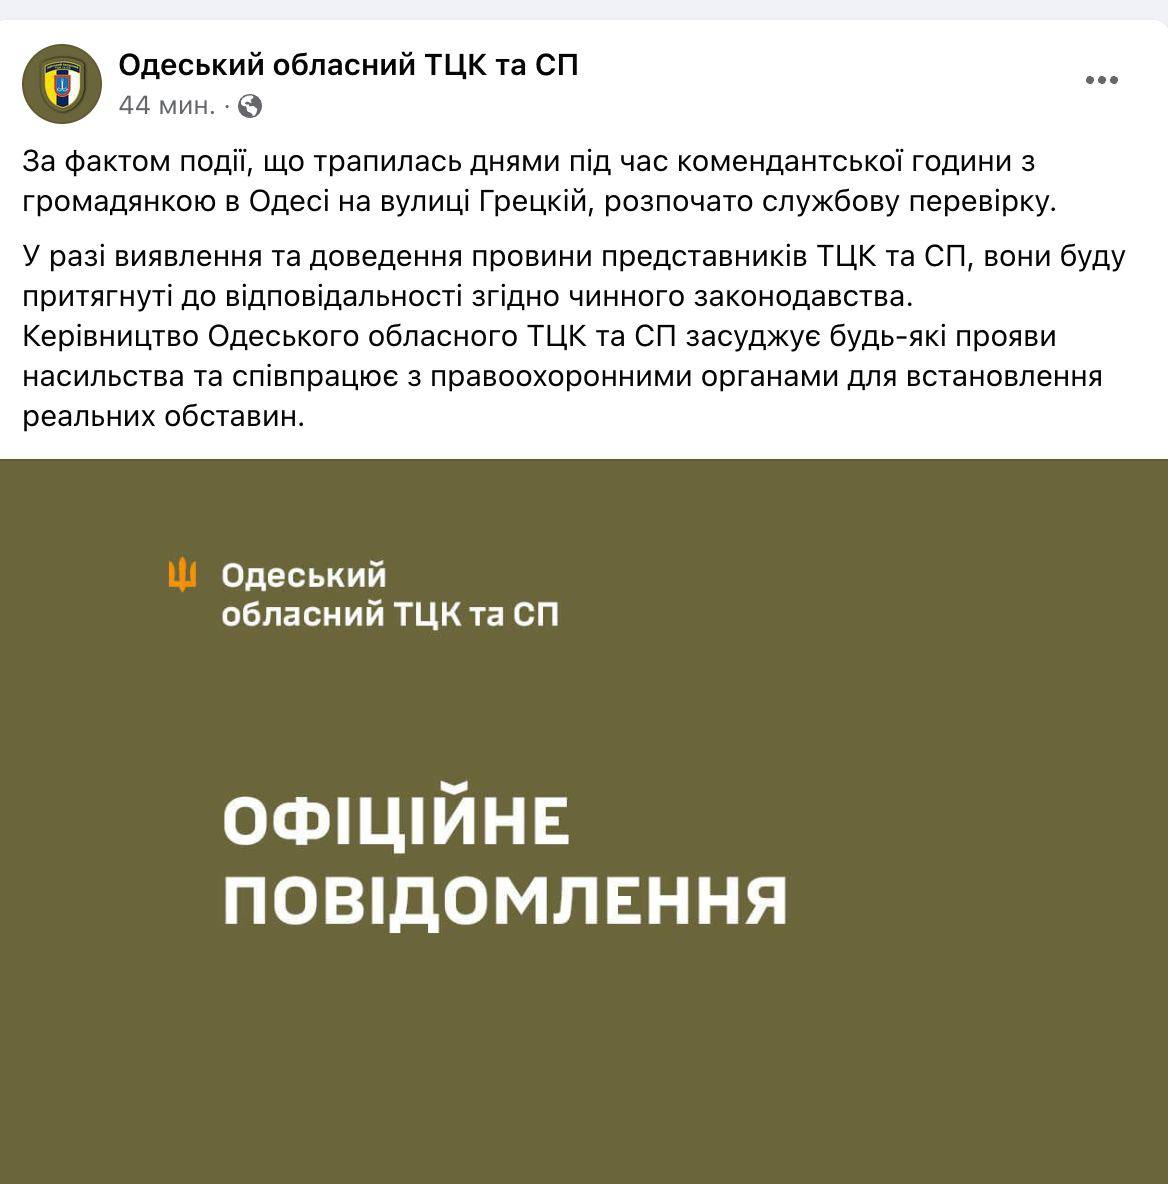 В Одессе представитель ТЦК избил 19-летнюю девушку, в ведомстве заявили о начале проверки: кадры  — фото 2